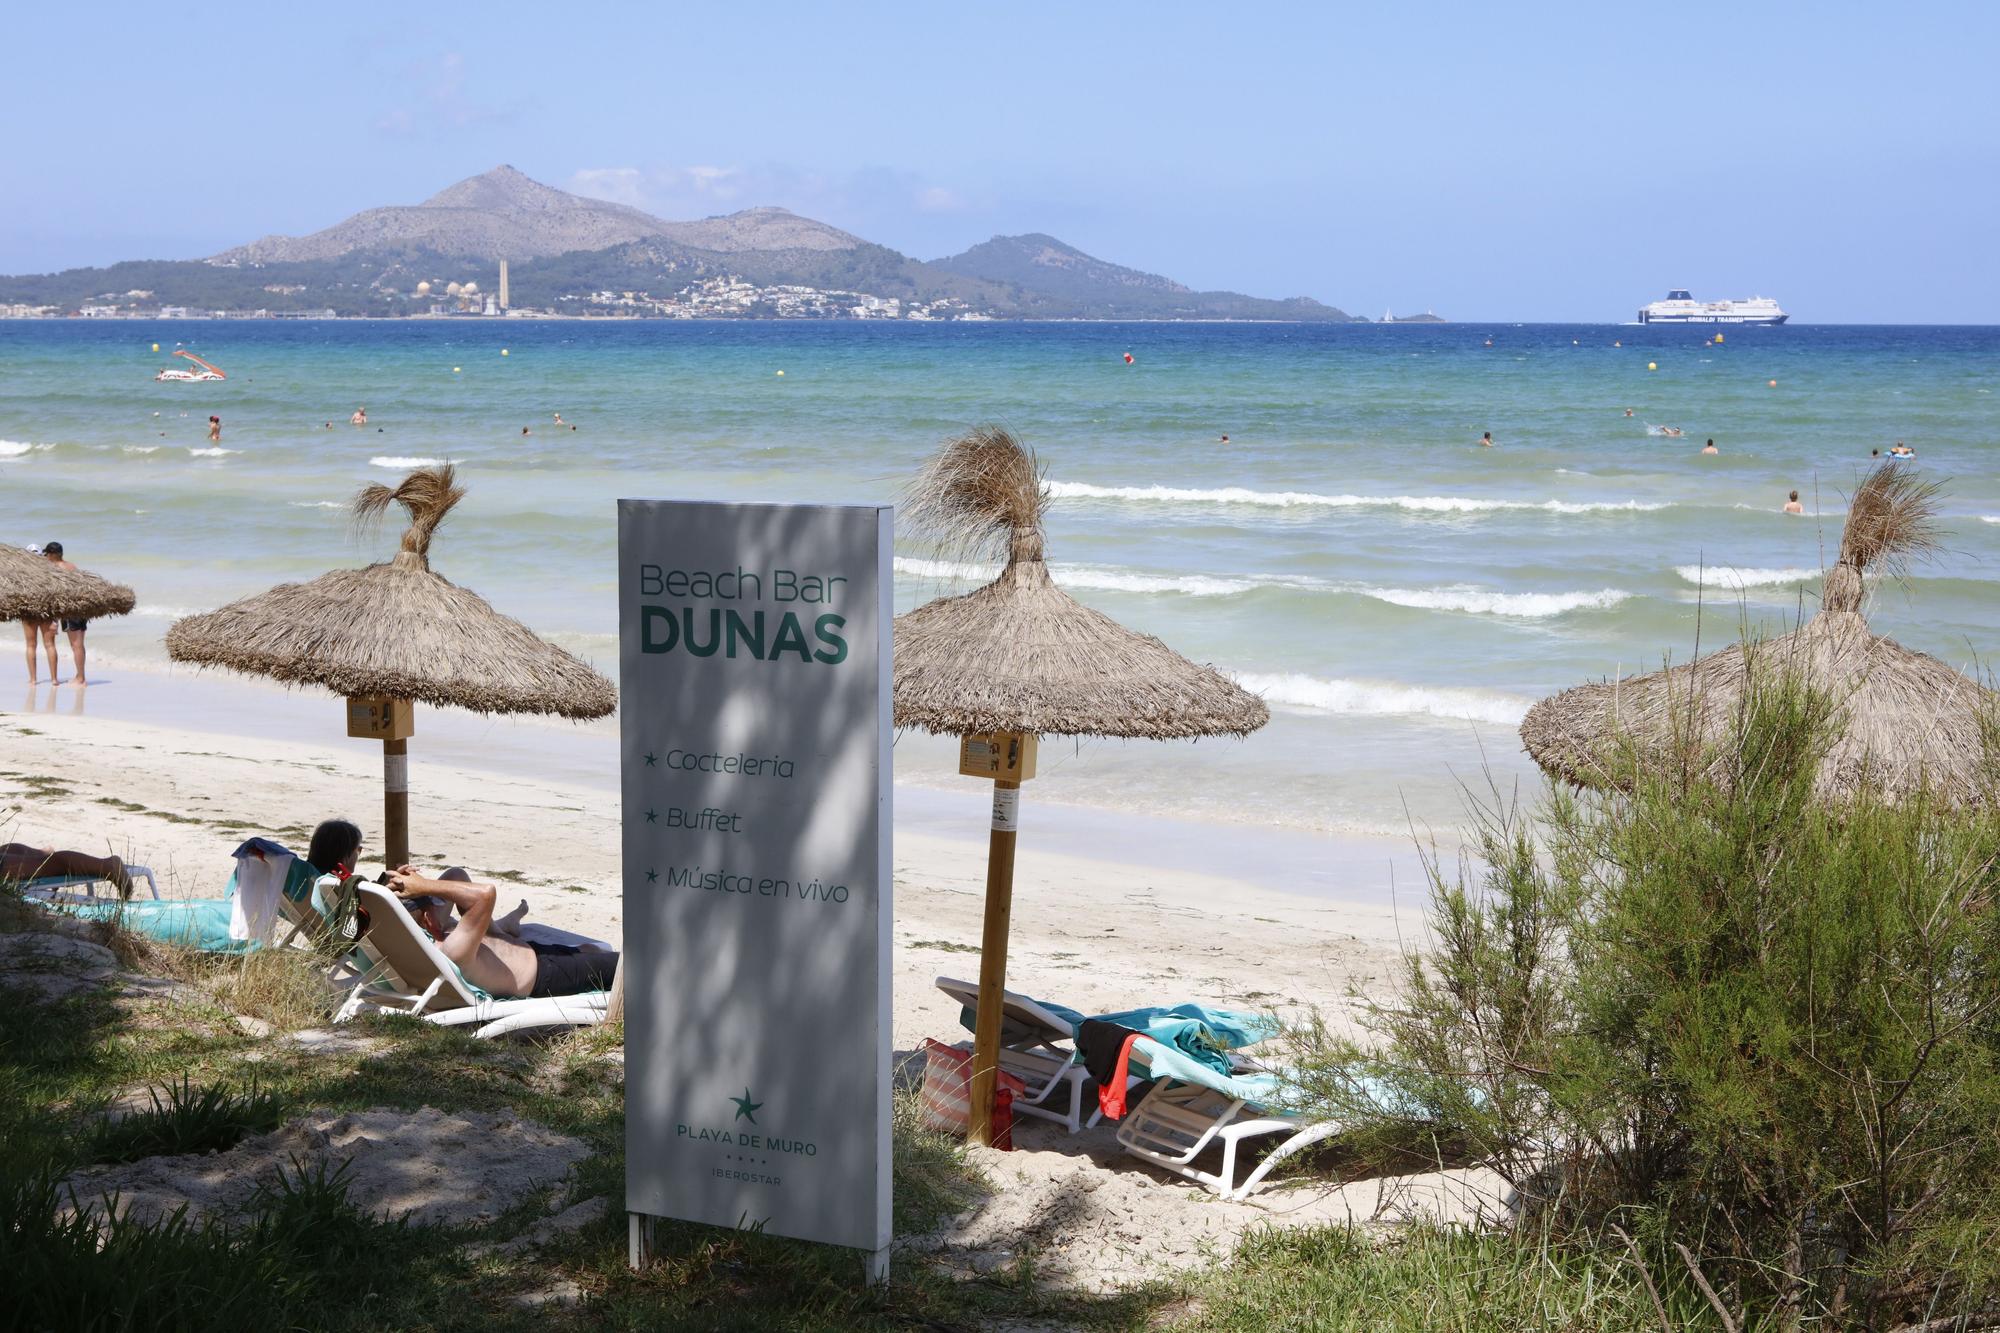 Das ist die Beach Bar Dunas